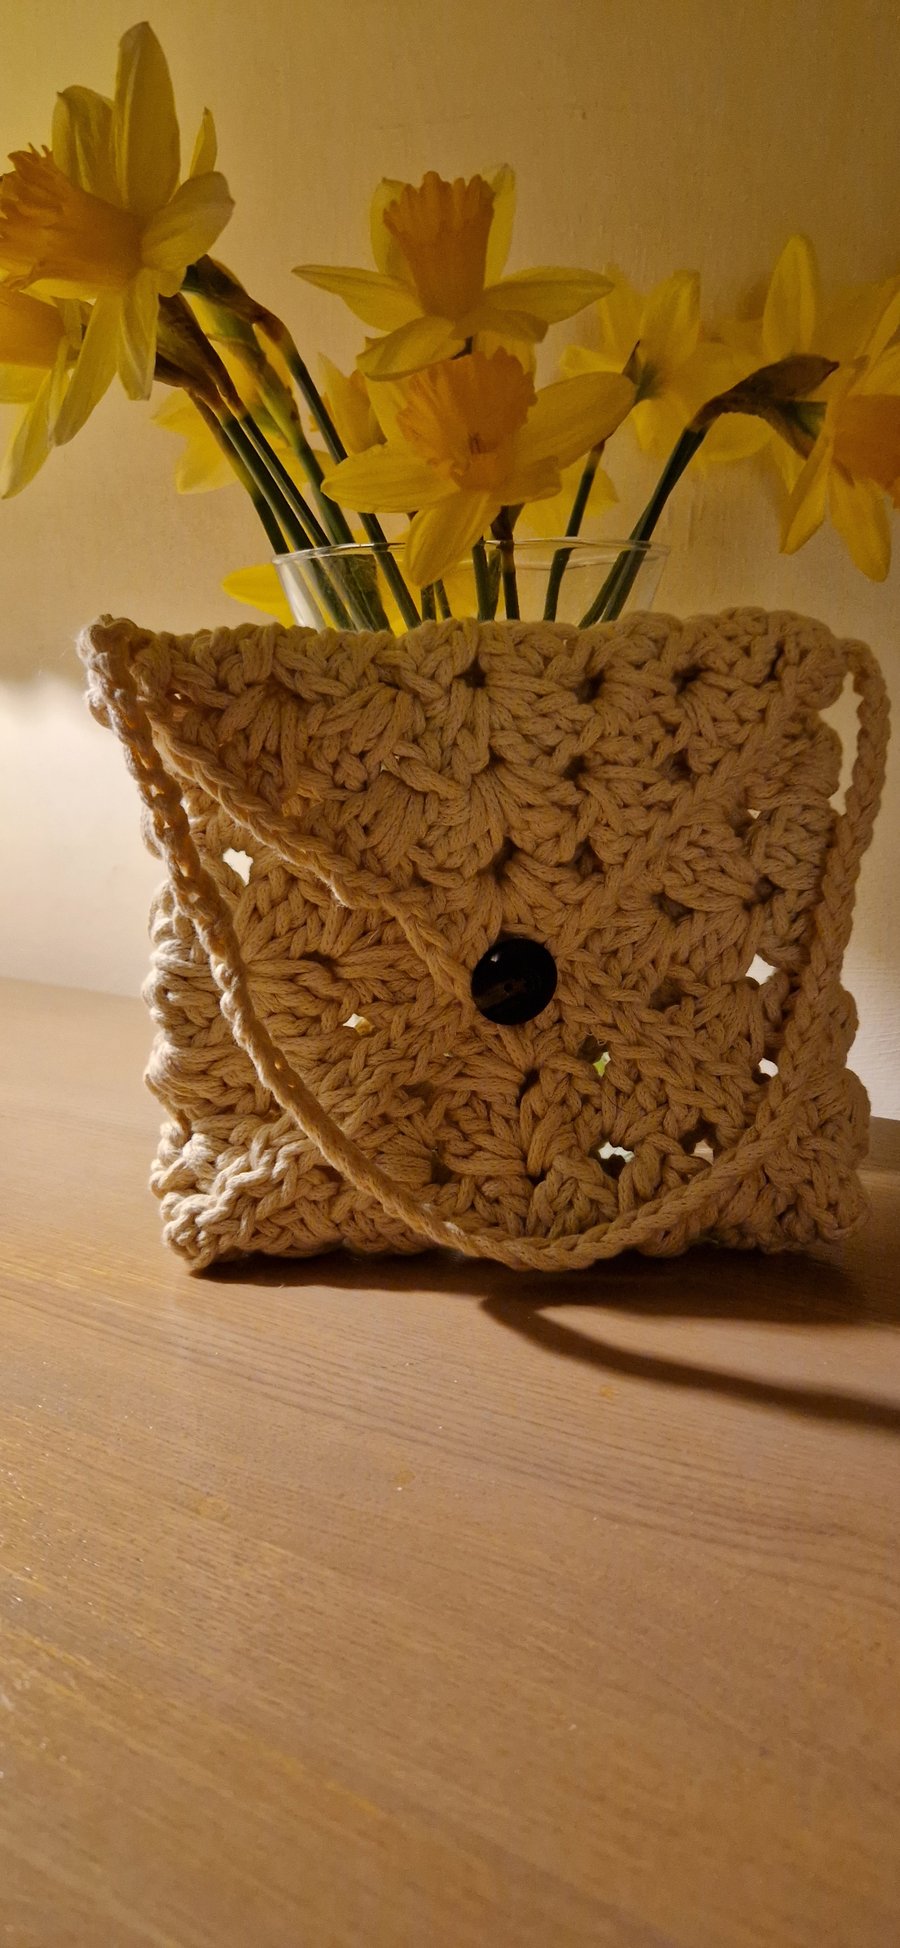 Handmade crocheted handbag